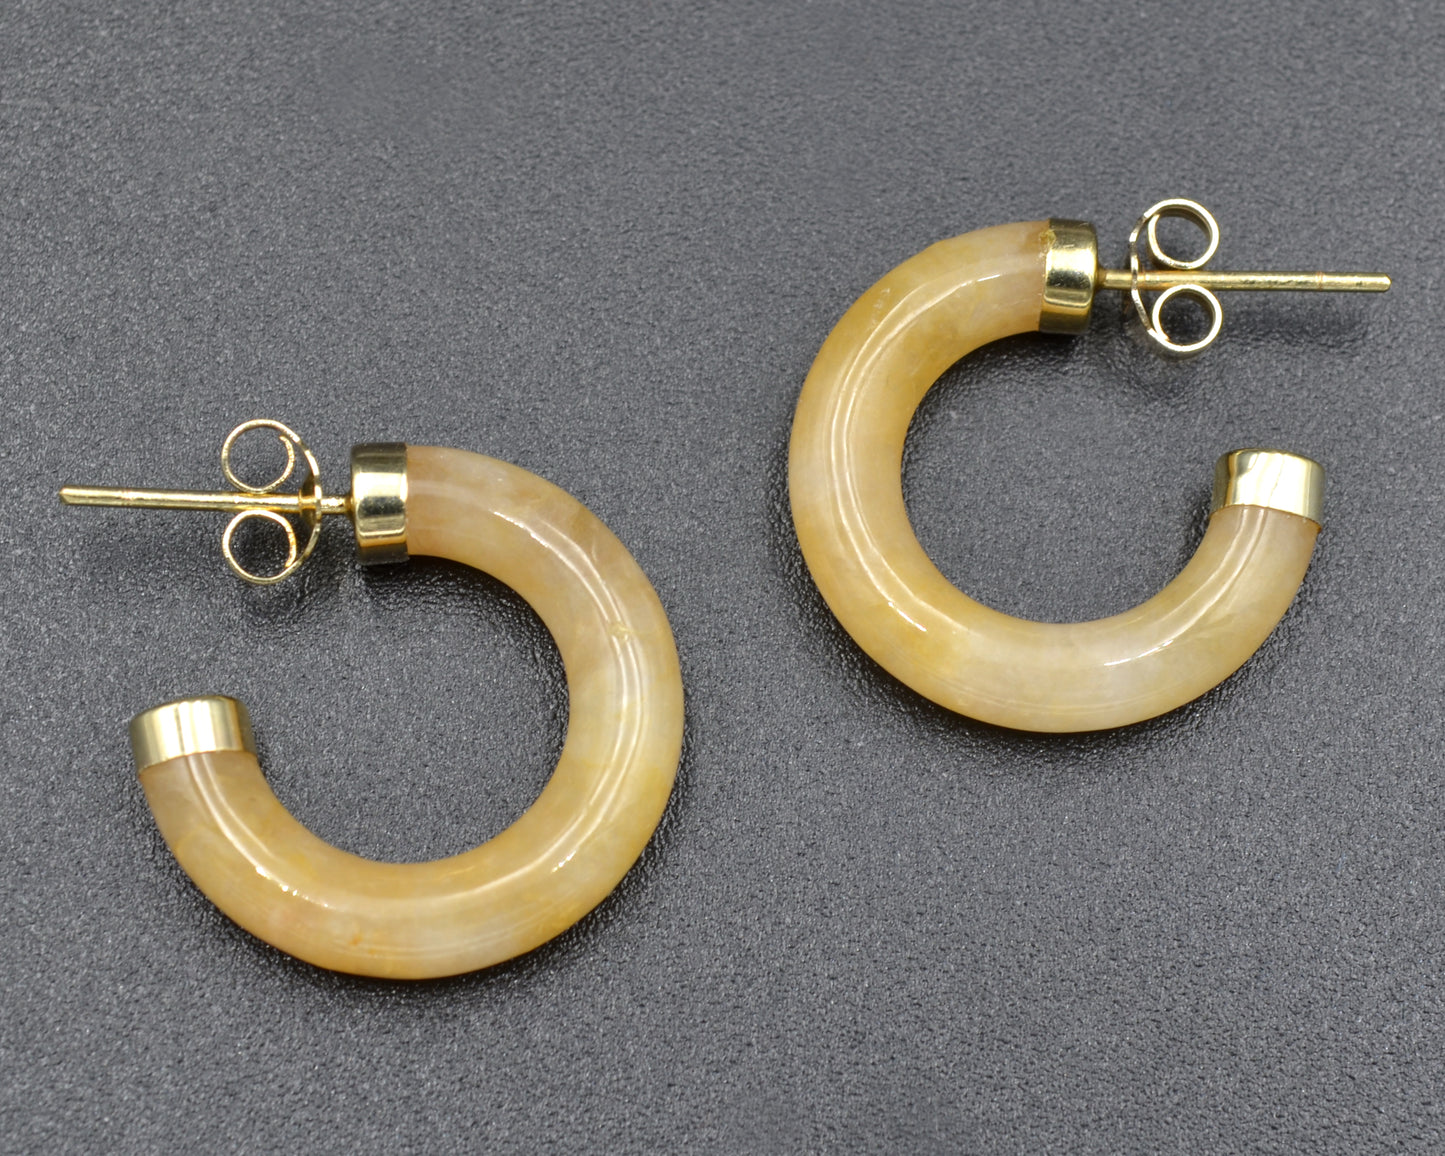 Yellow Jade and Gold Hoop Earrings